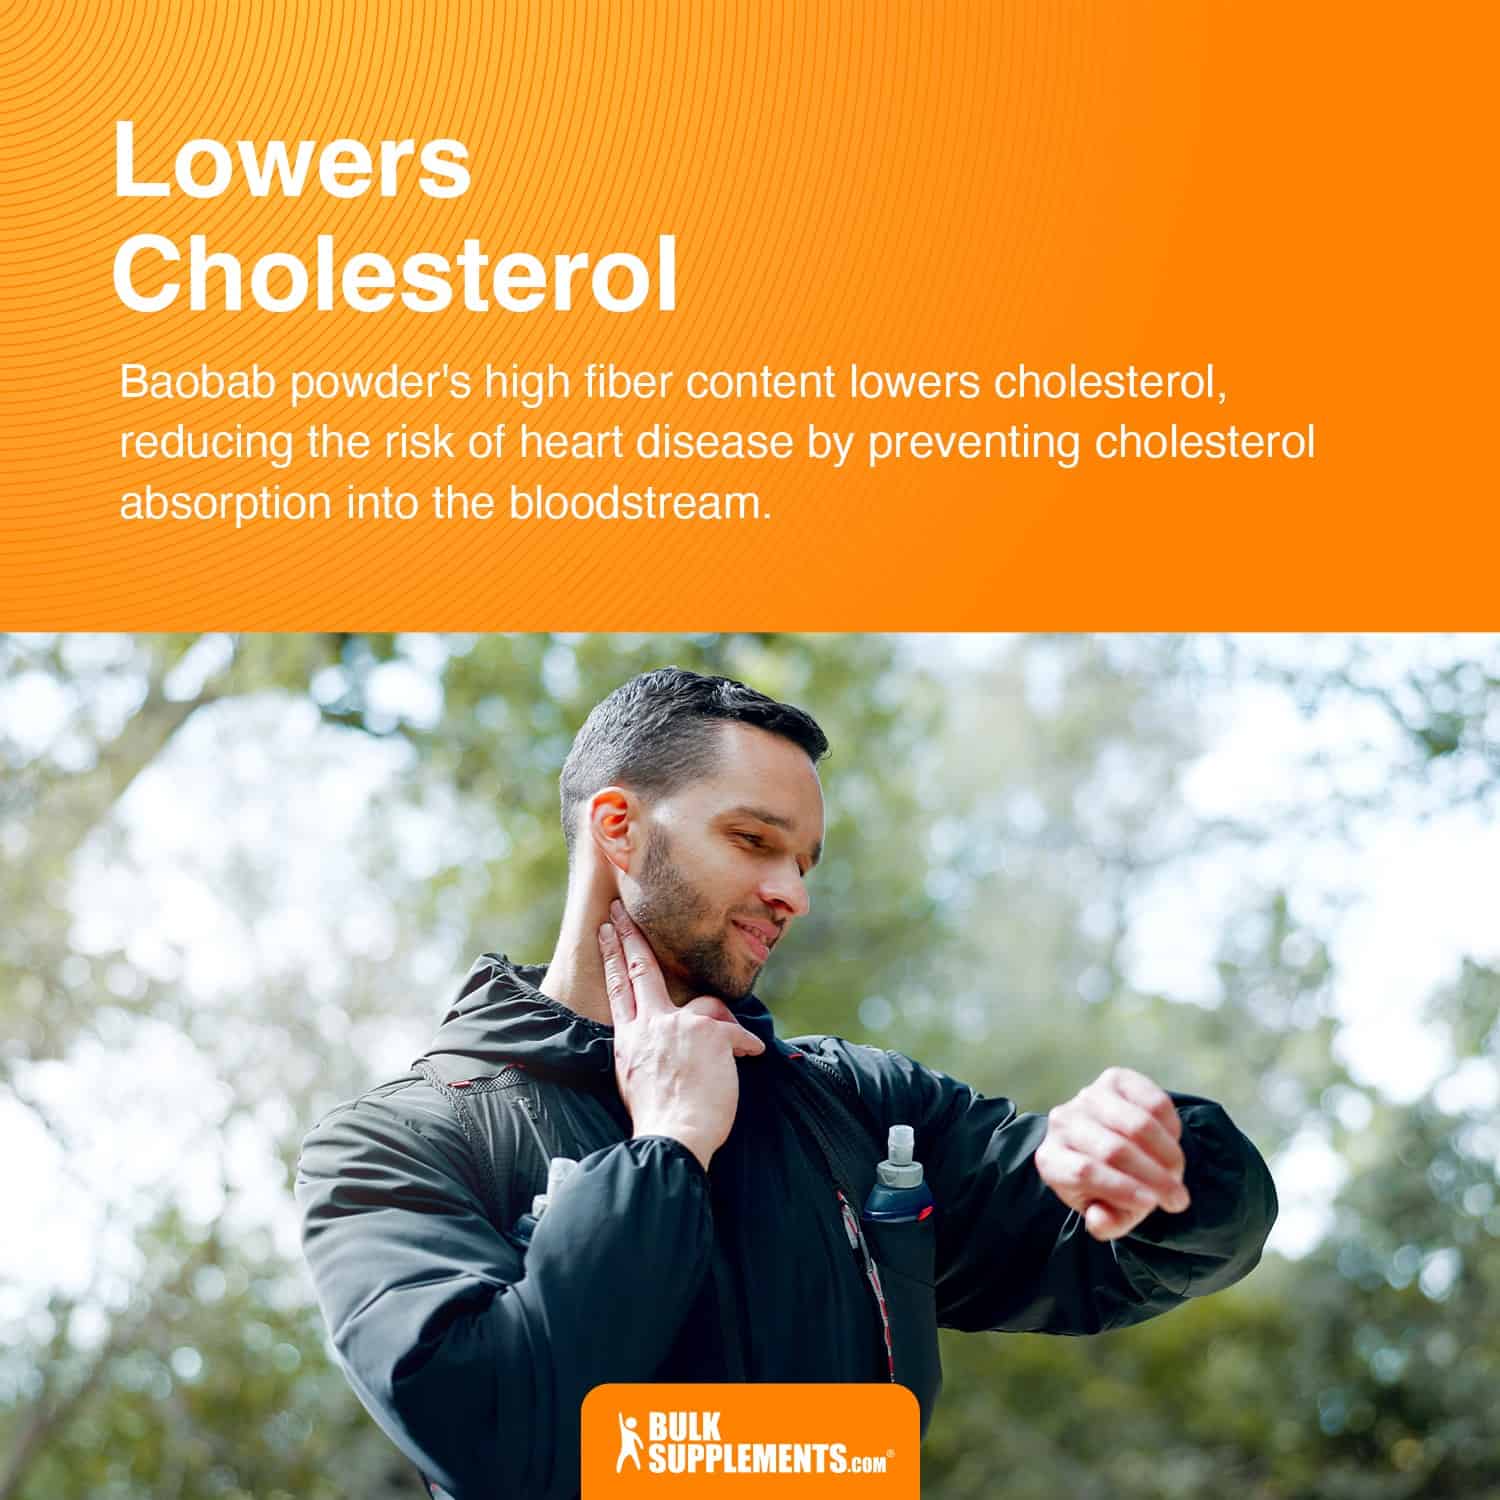 baobab powder lowers cholesterol